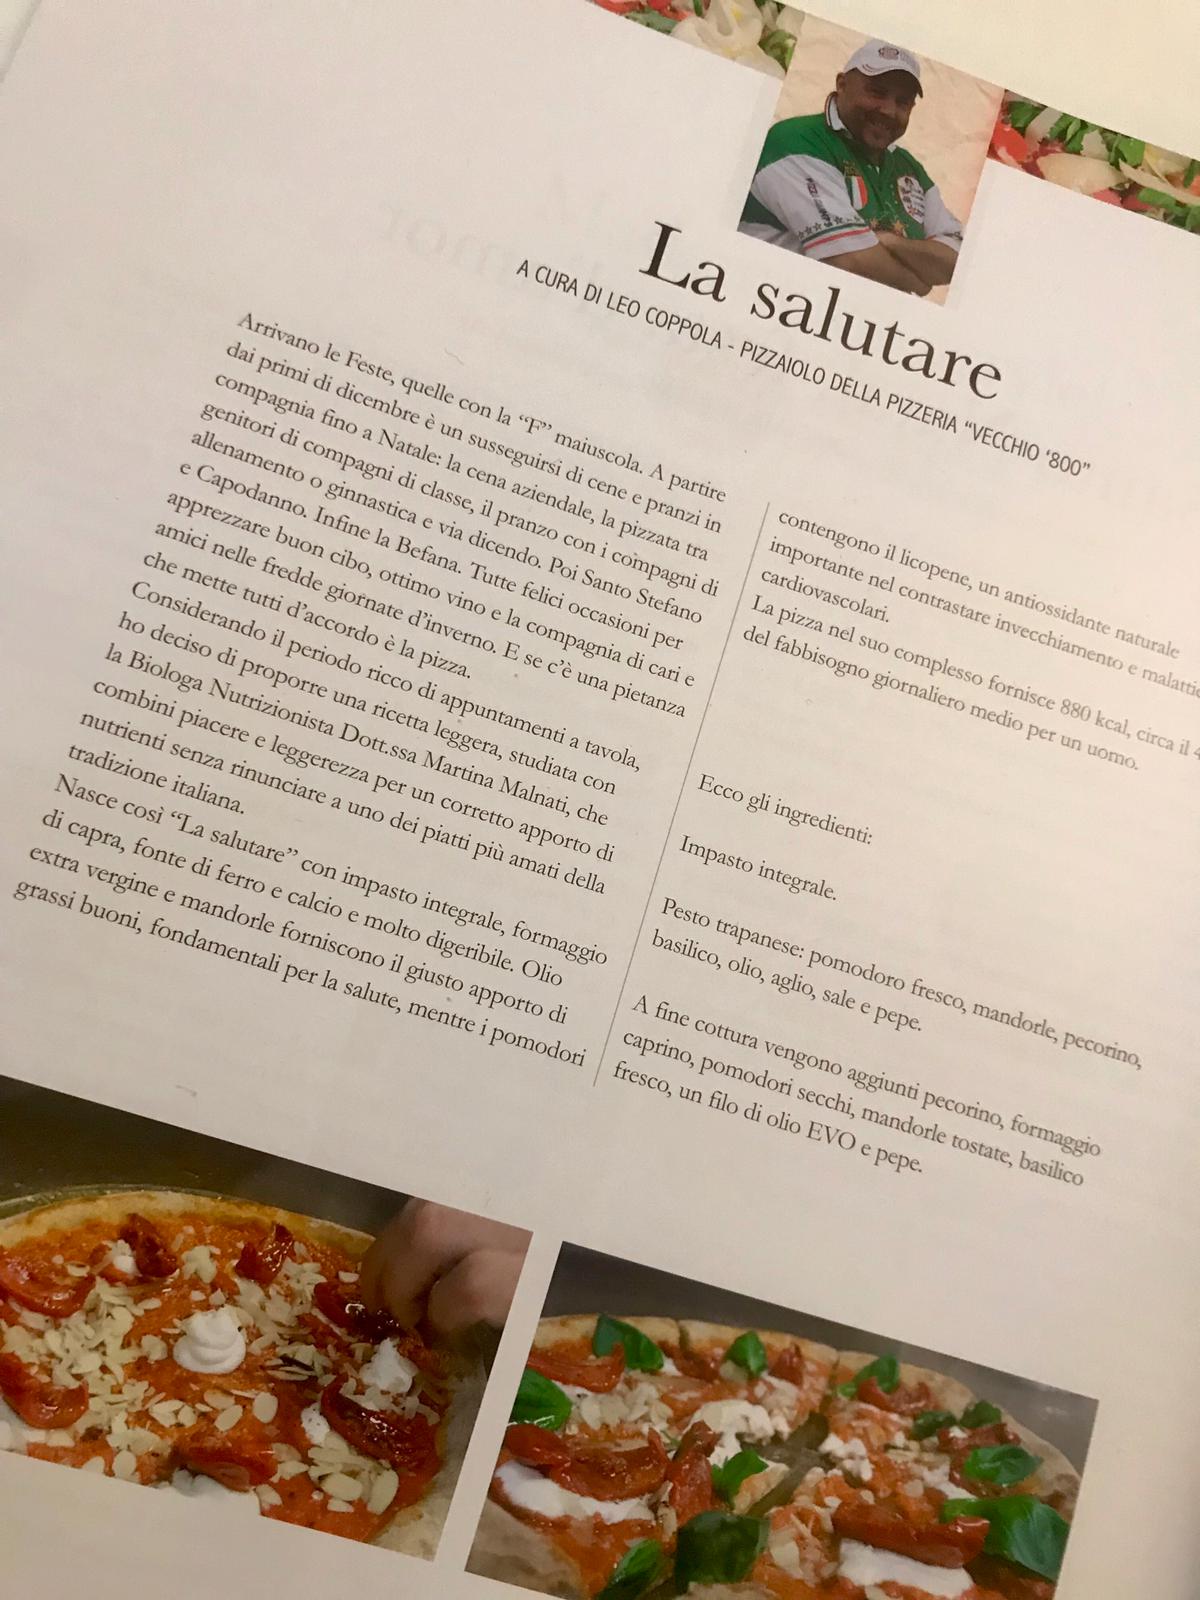 Articolo su Living Varese - la pizza salutare